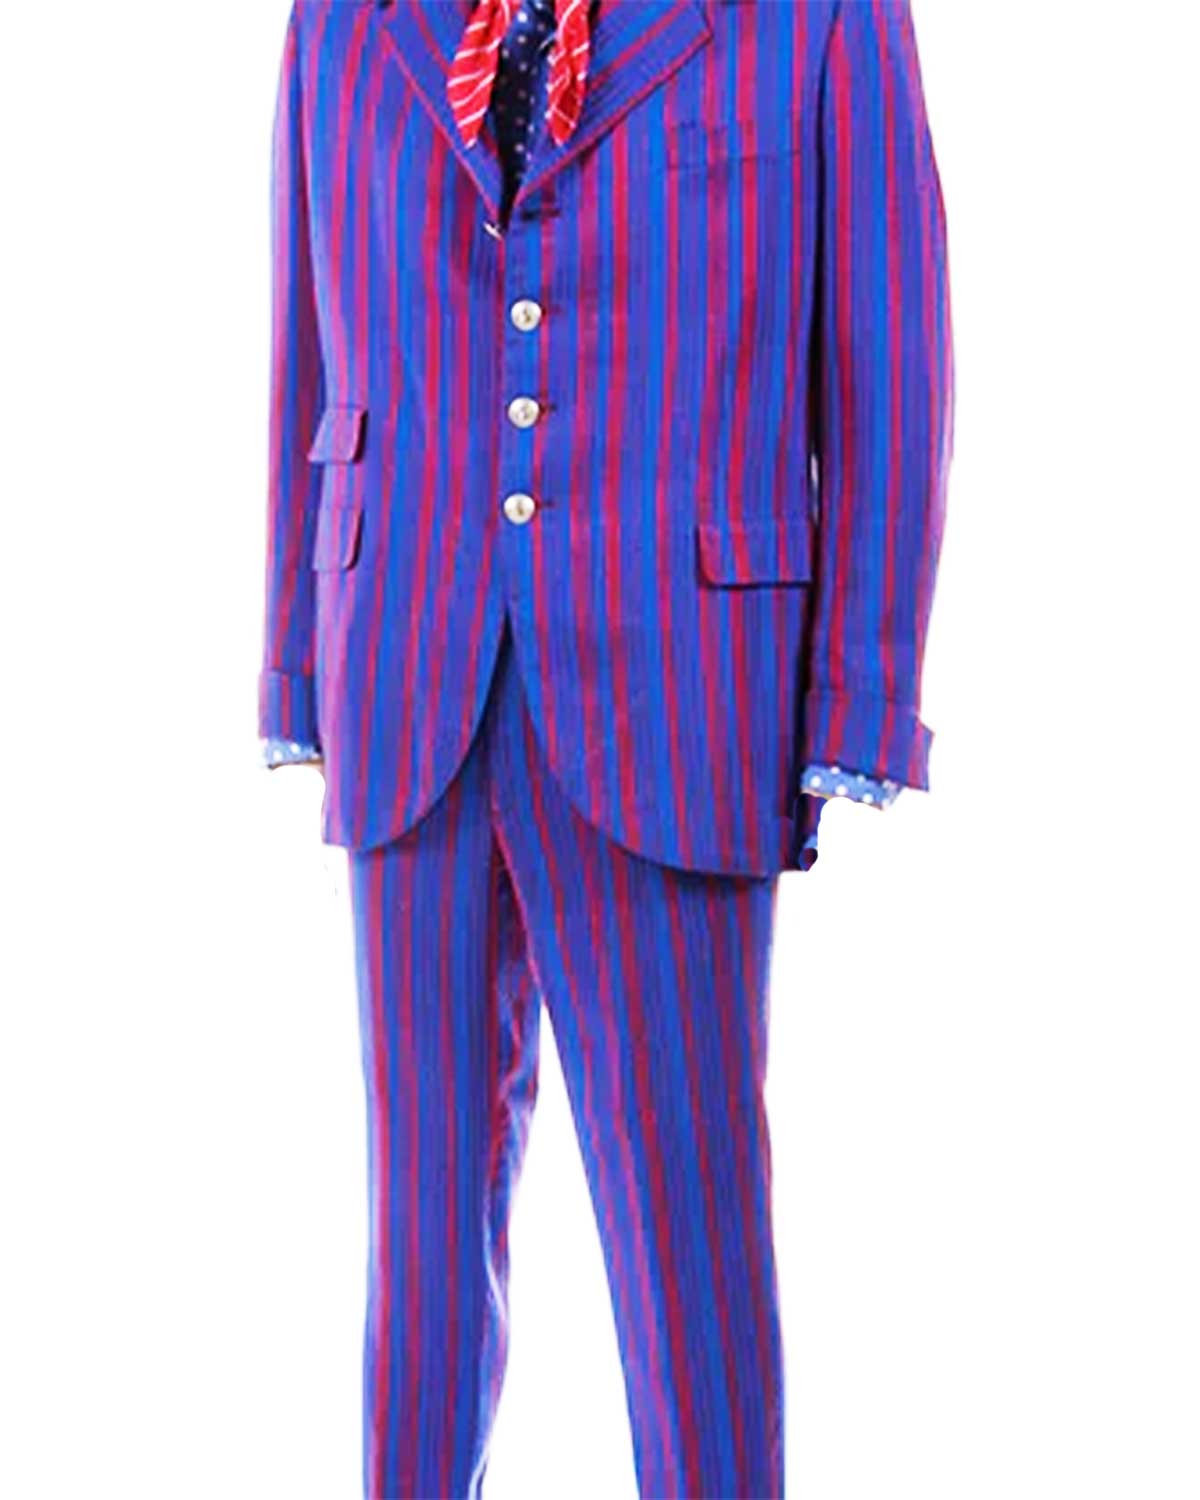 Austin Power Pinstripe Suit